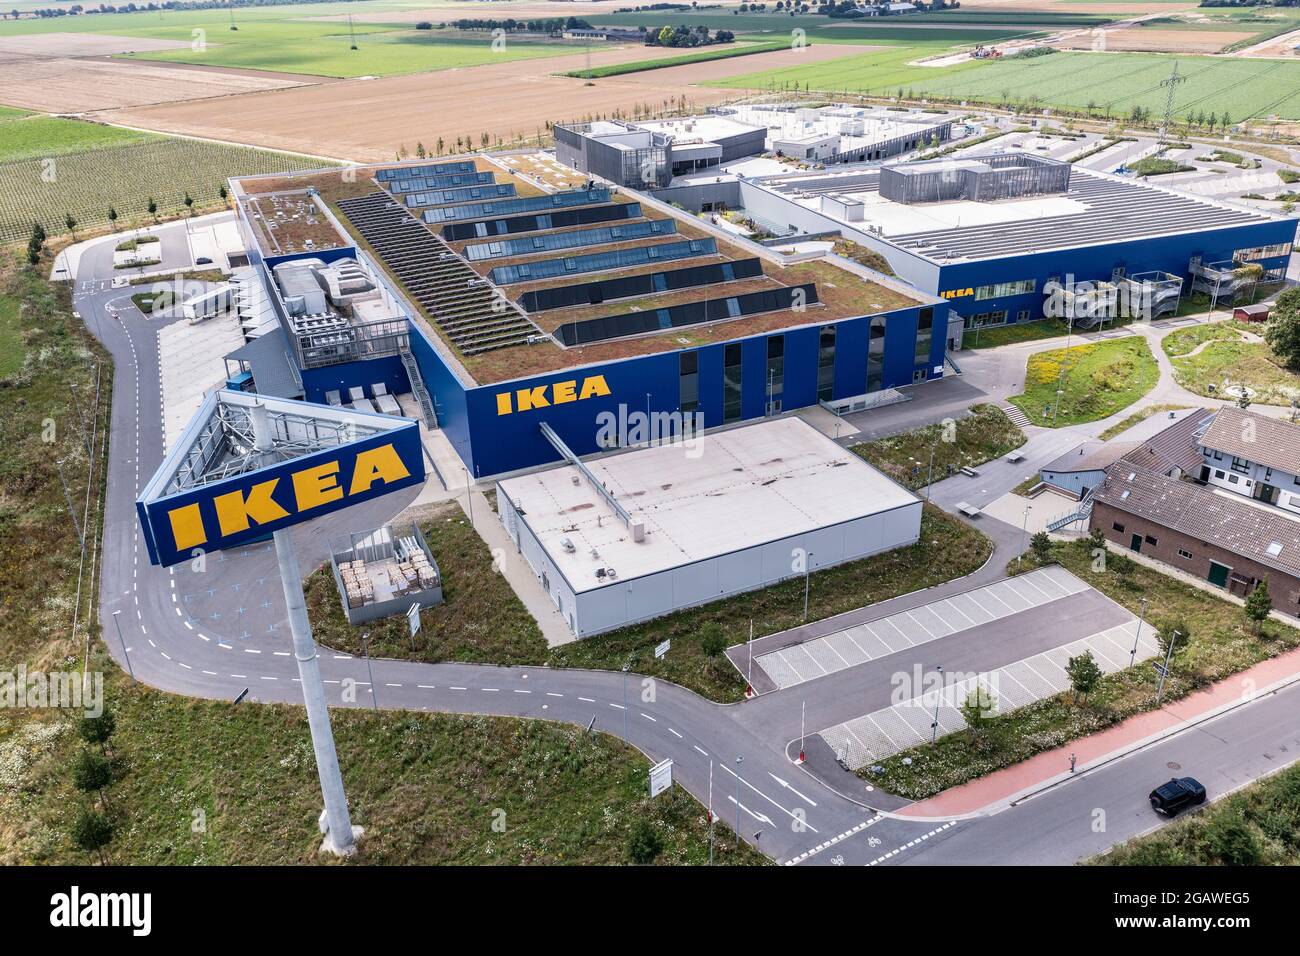 Luftaufnahme des Möbelhauses IKEA in Kaarst bei Düsseldorf. Der Bau gehört zu den größten Ikea-Einrichtungshäusern in Deutschland. Stock Photo